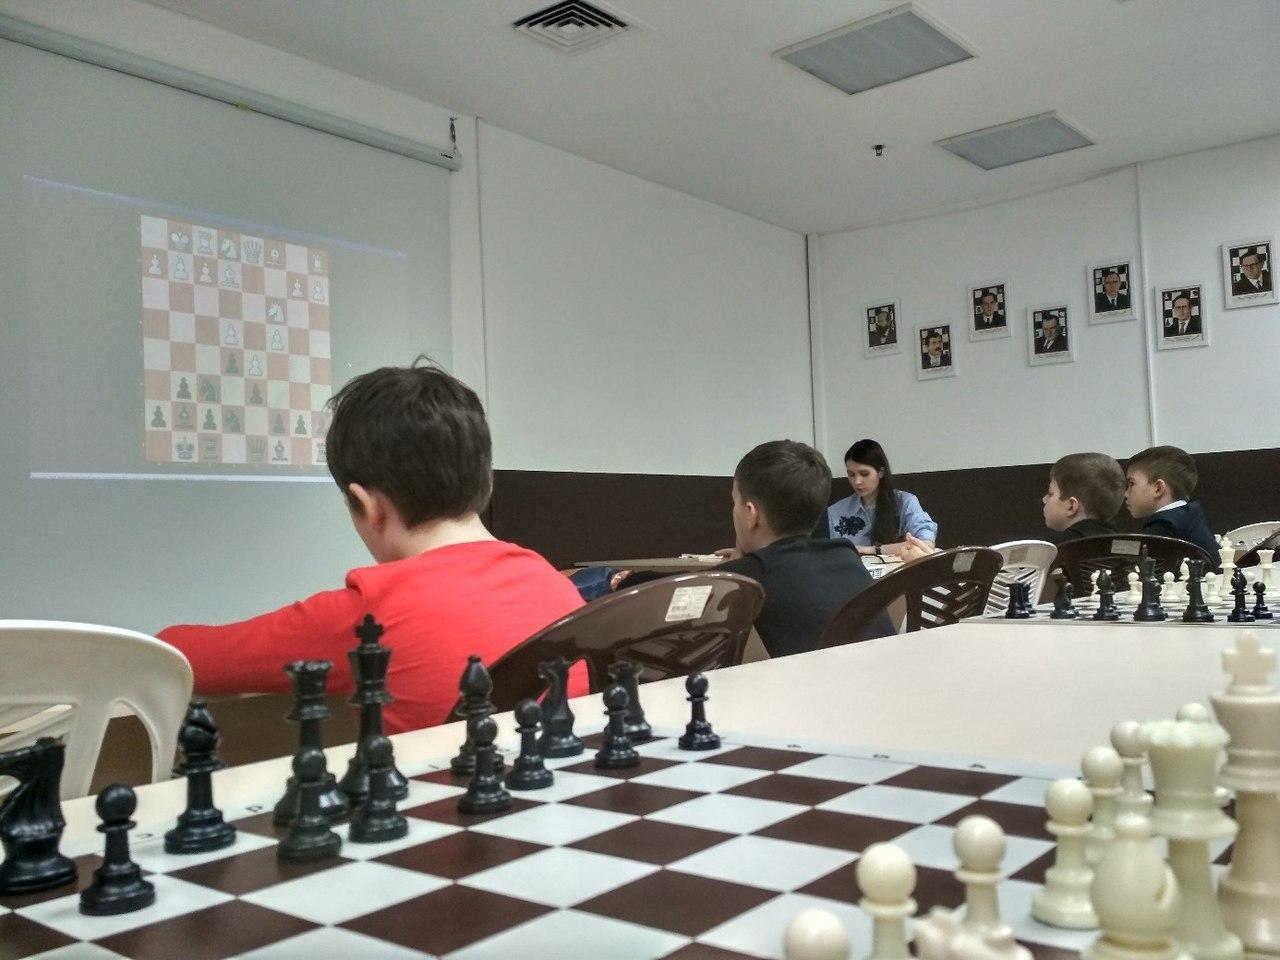 25-го апреля состоялся мастер-класс для шахматистов с рейтингом 1050-1250 с мастером ФИДЕ по шахматам Любовью Александровной Маркеловой